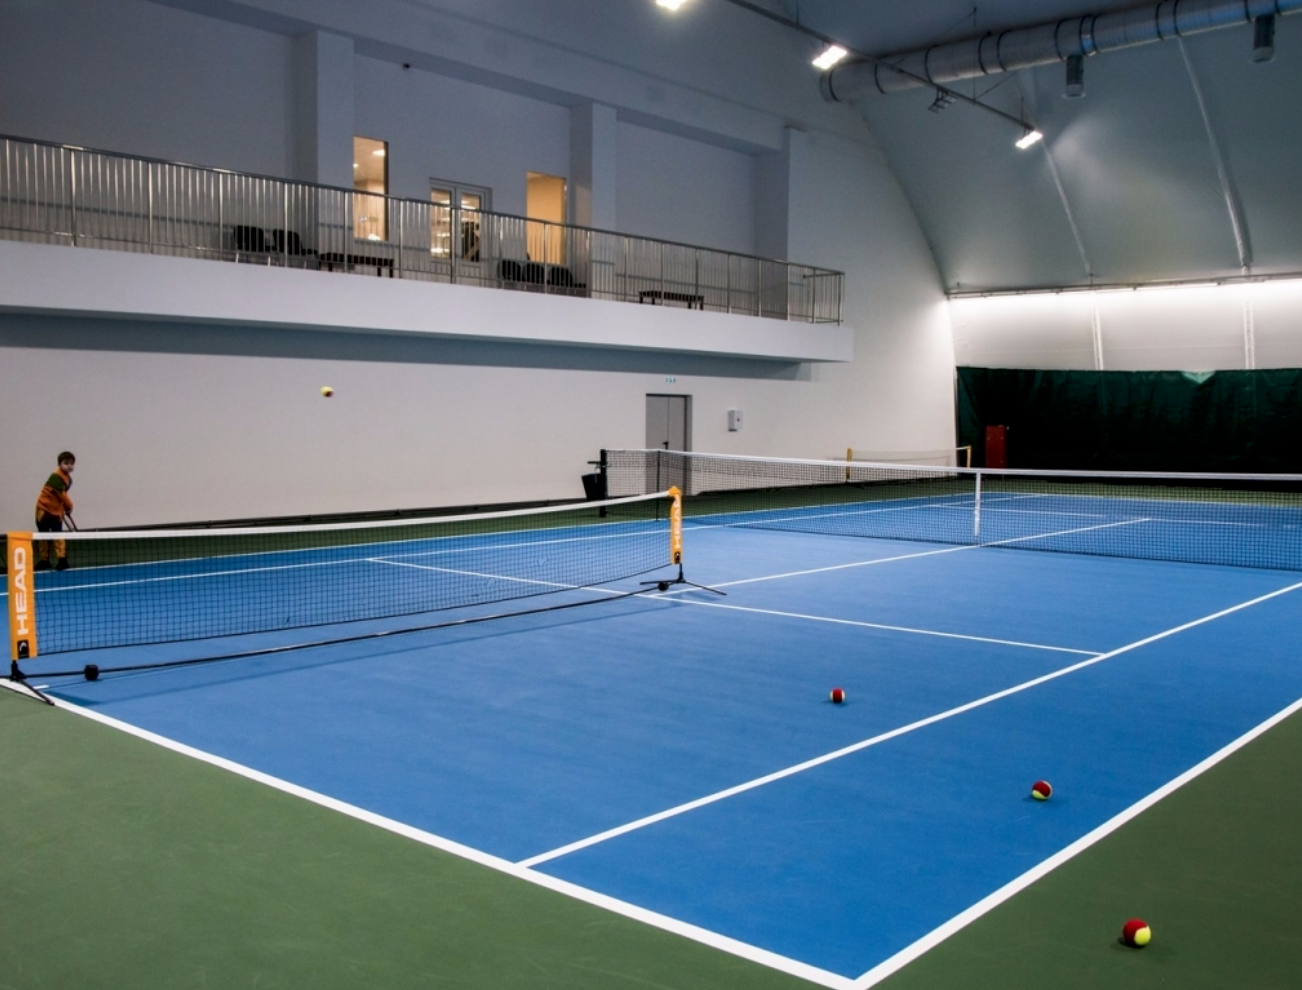 2 теннисных корта. ФОК МИД теннисный корт. Спорт комплекс тенисный корд. Спортивные комплексы с теннисными полями. Теннисный спортивный комплекс на 2 корта.